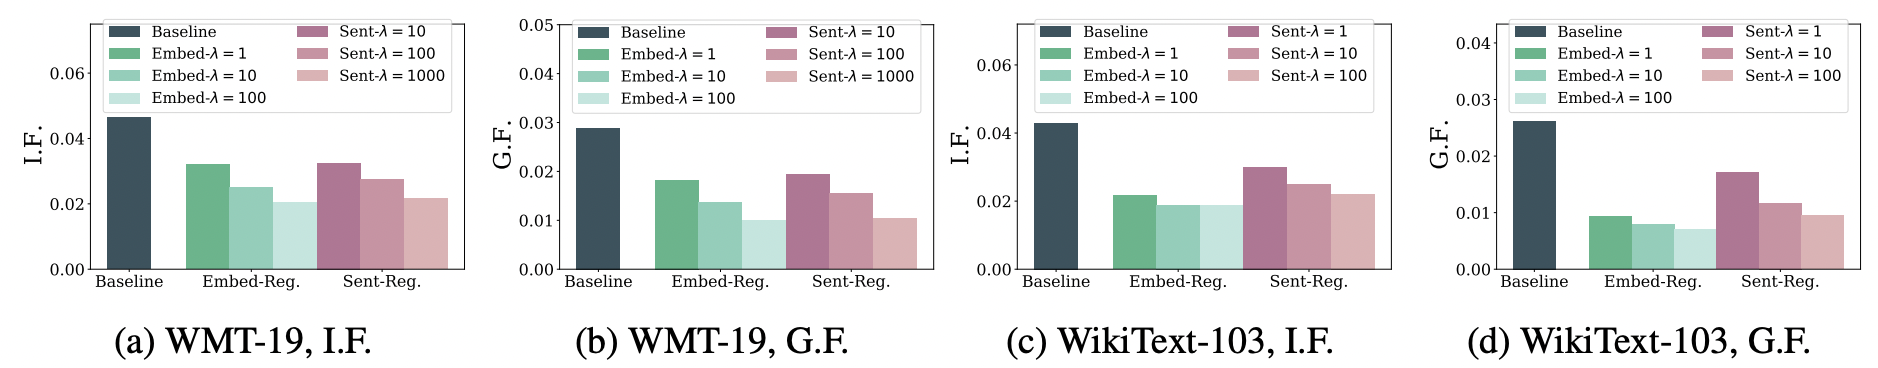 WMT-19とWikiText-103で学習された言語モデルの職業に関する感情バイアス．スコアが低いほど感情バイアスがないことを示している．